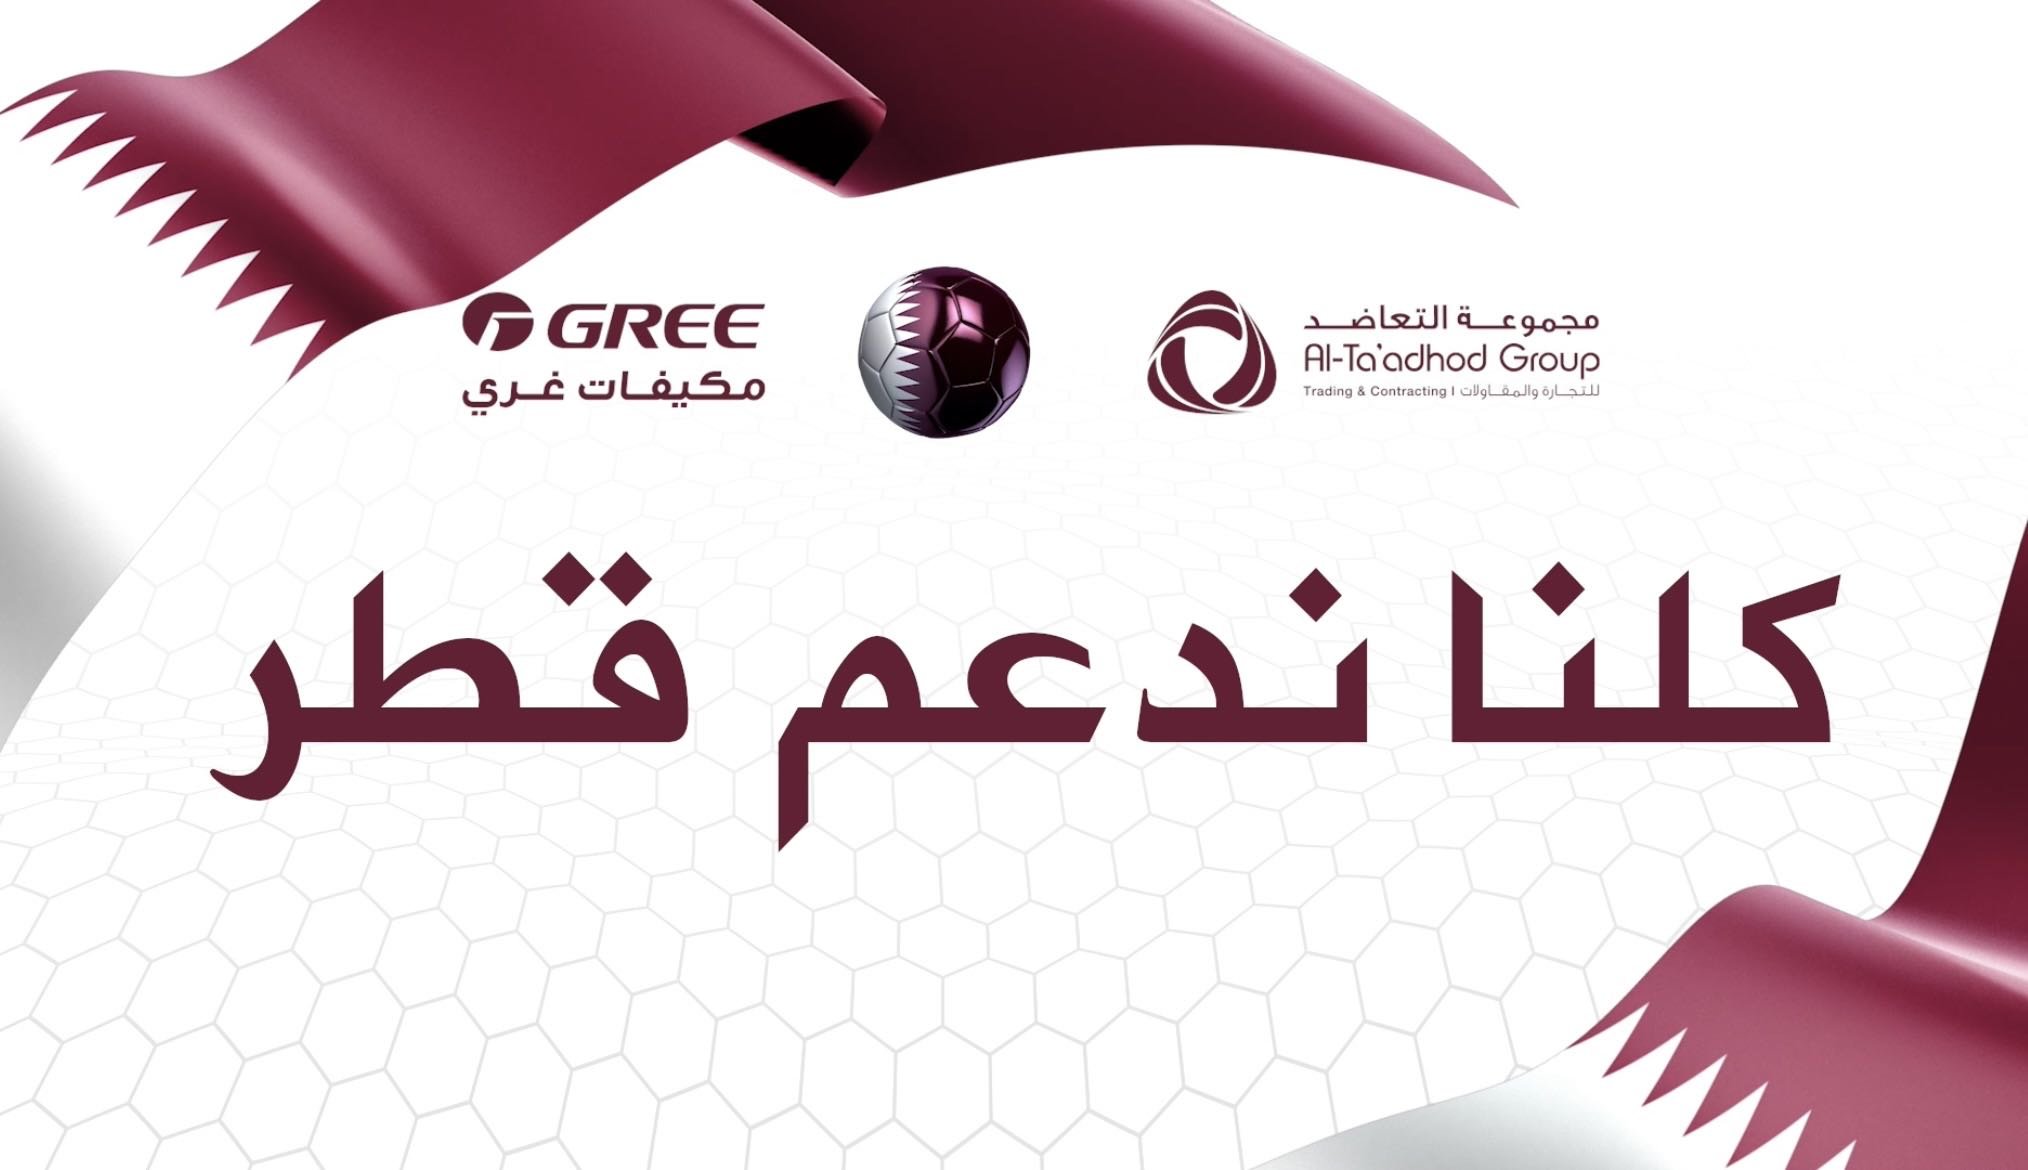 格力在卡塔尔当地的宣传广告截图。